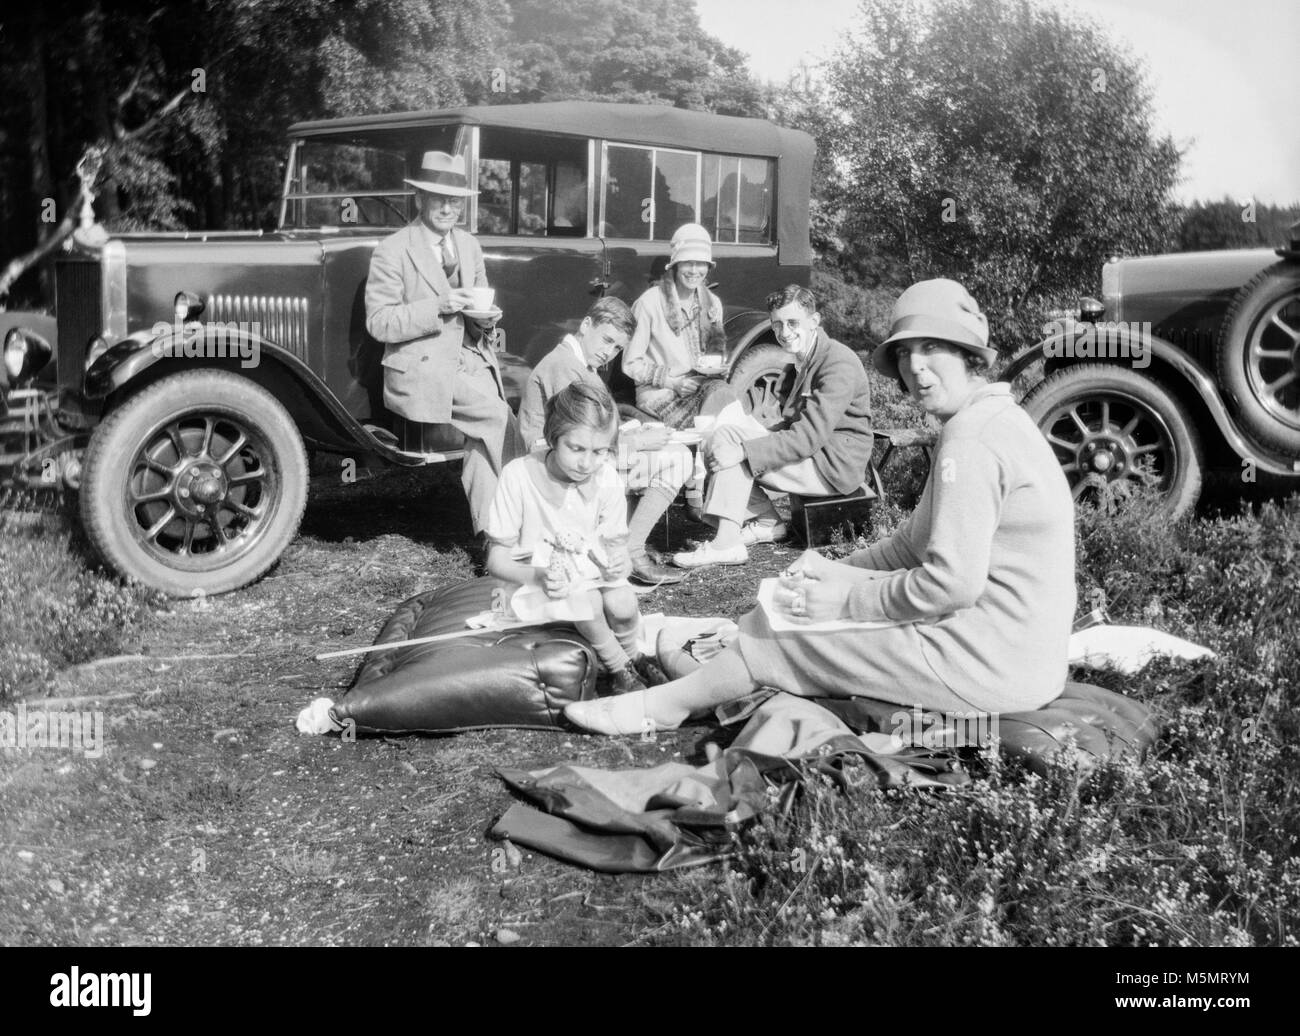 1920 Une image d'une famille jouissant d'un pique-nique avec deux voitures de collection). Banque D'Images